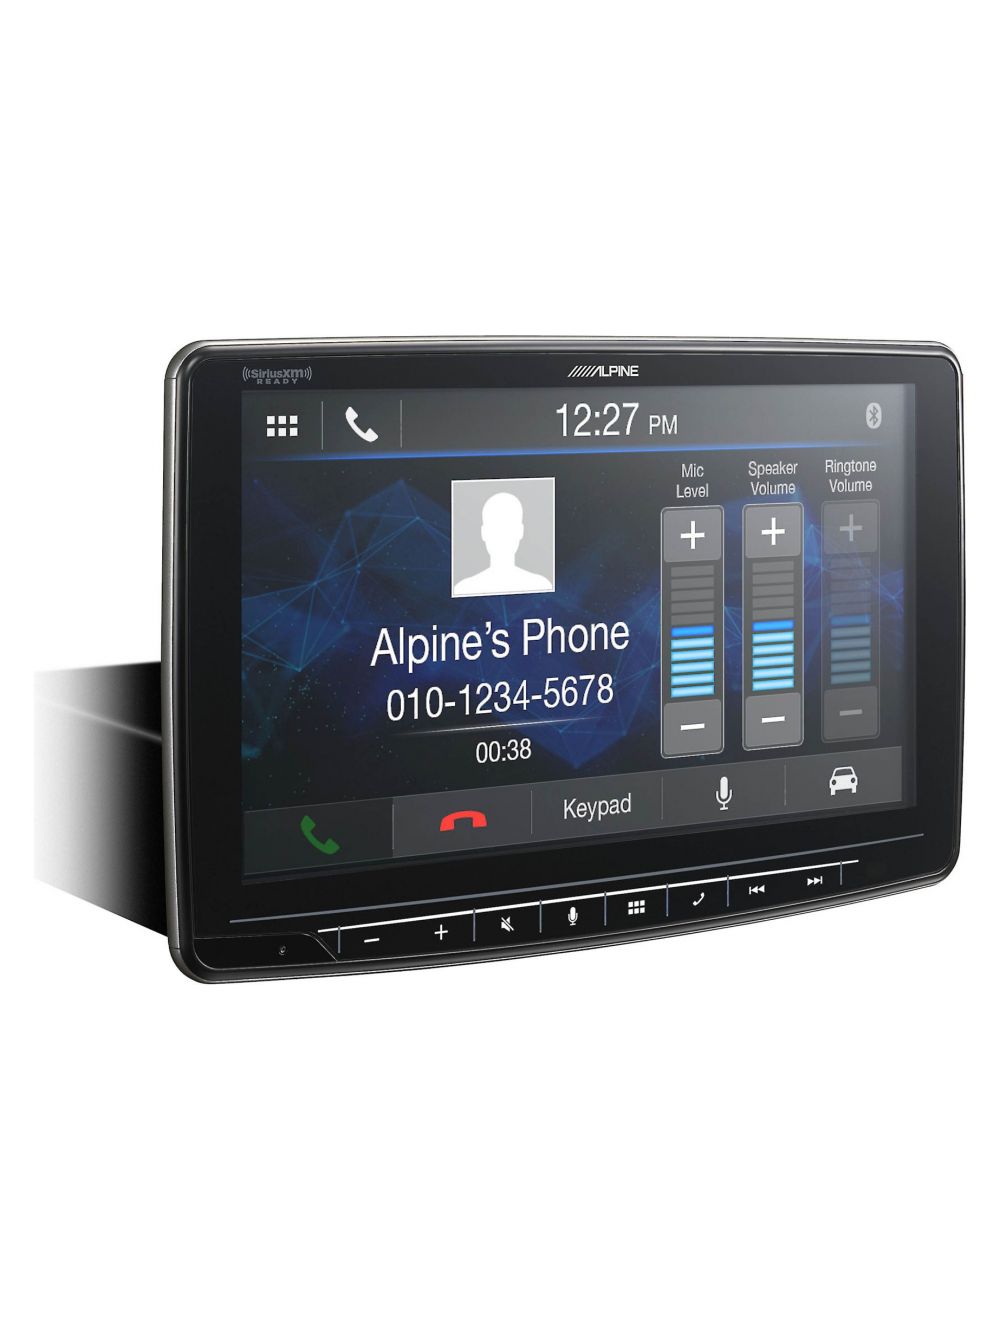 Alpine iLX-F259 Mechless Multimedia Receiver (iLXF259)